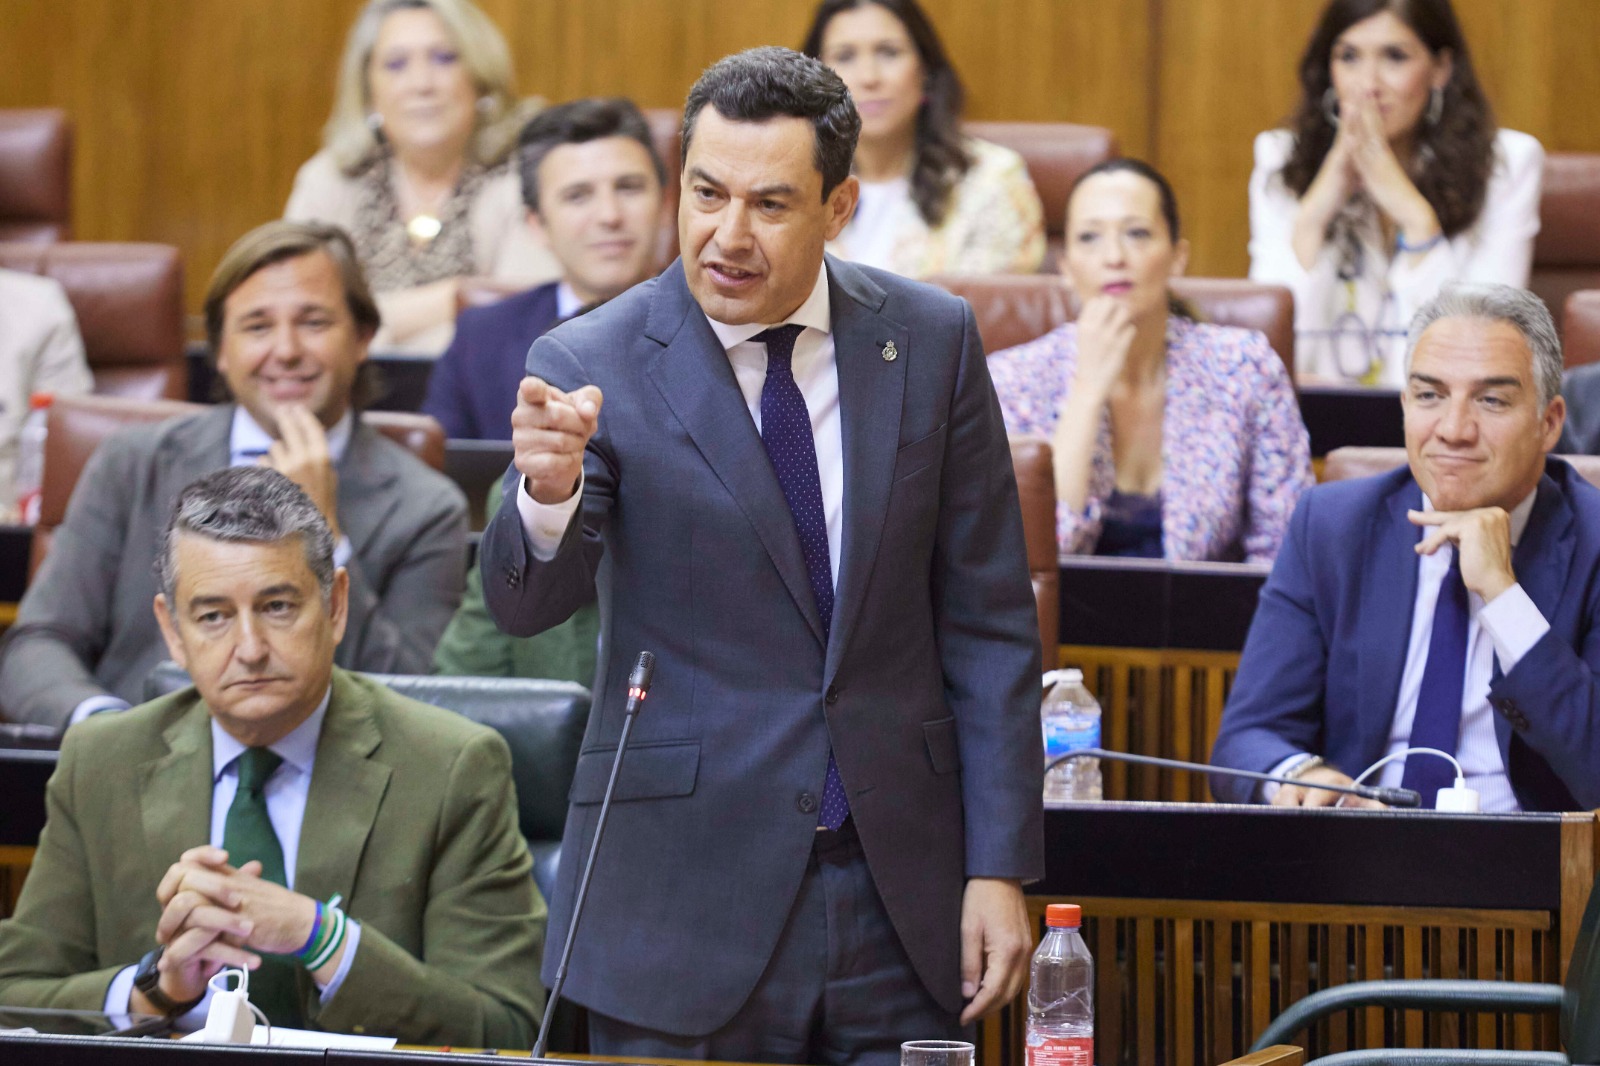 El presidente de la Junta de Andalucía, Juanma Moreno, se dirige ala bancada del PSOE este jueves durante la sesión de control en el Parlamento. Foto/ Europa Press